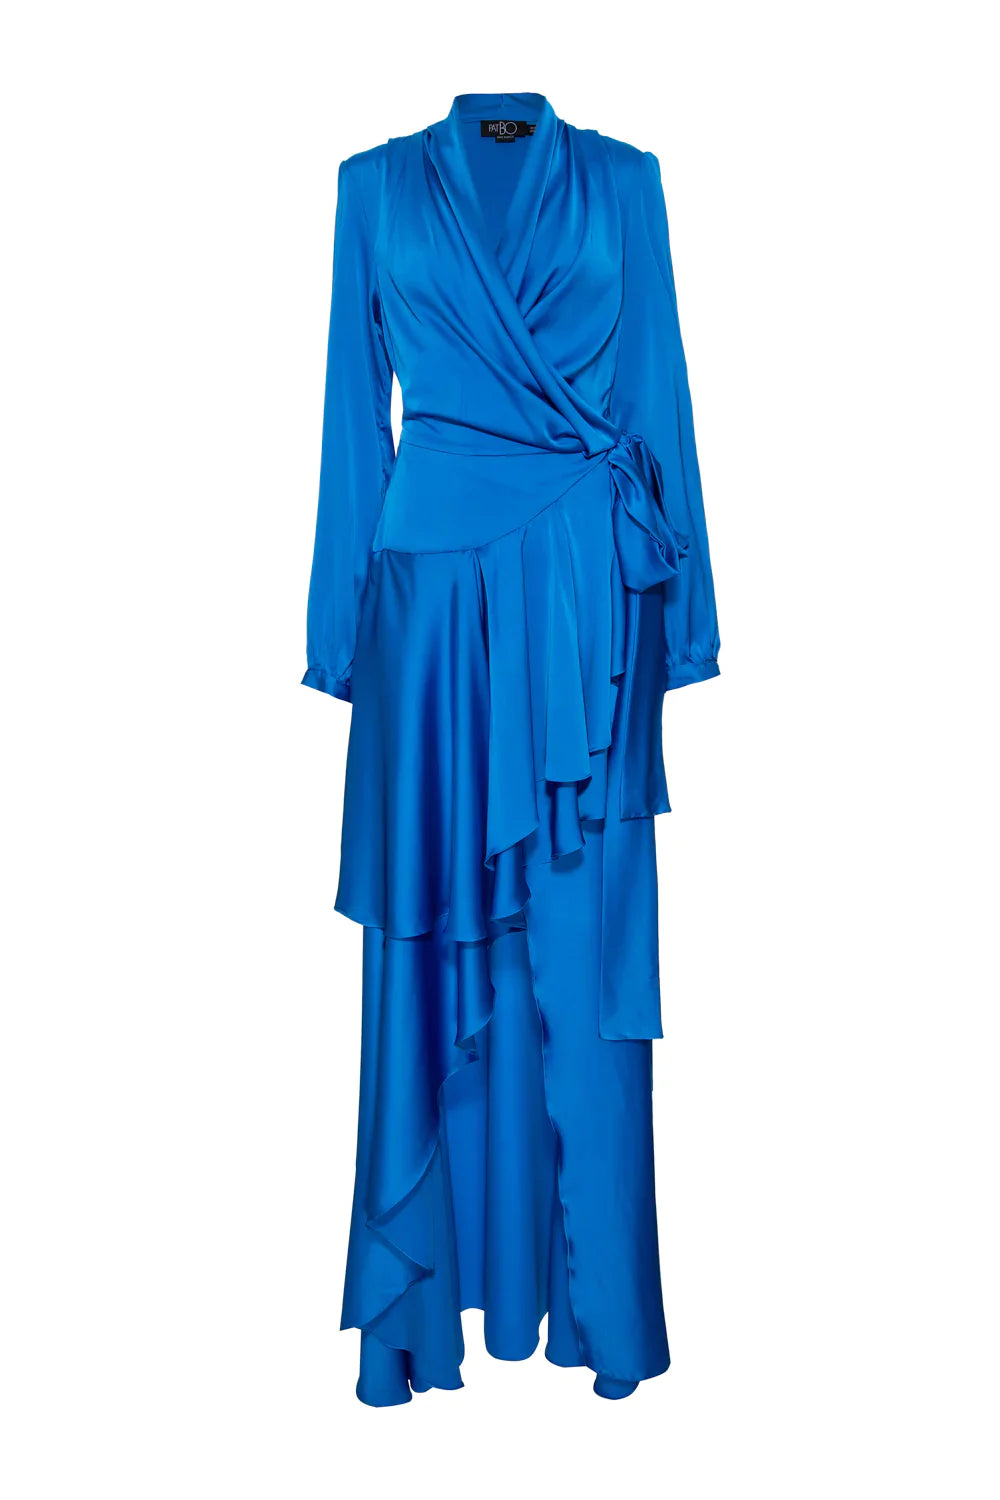 PatBo Hi Low Maxi Dress - Premium Long dress from Marina St Barth - Just $650.00! Shop now at Marina St Barth